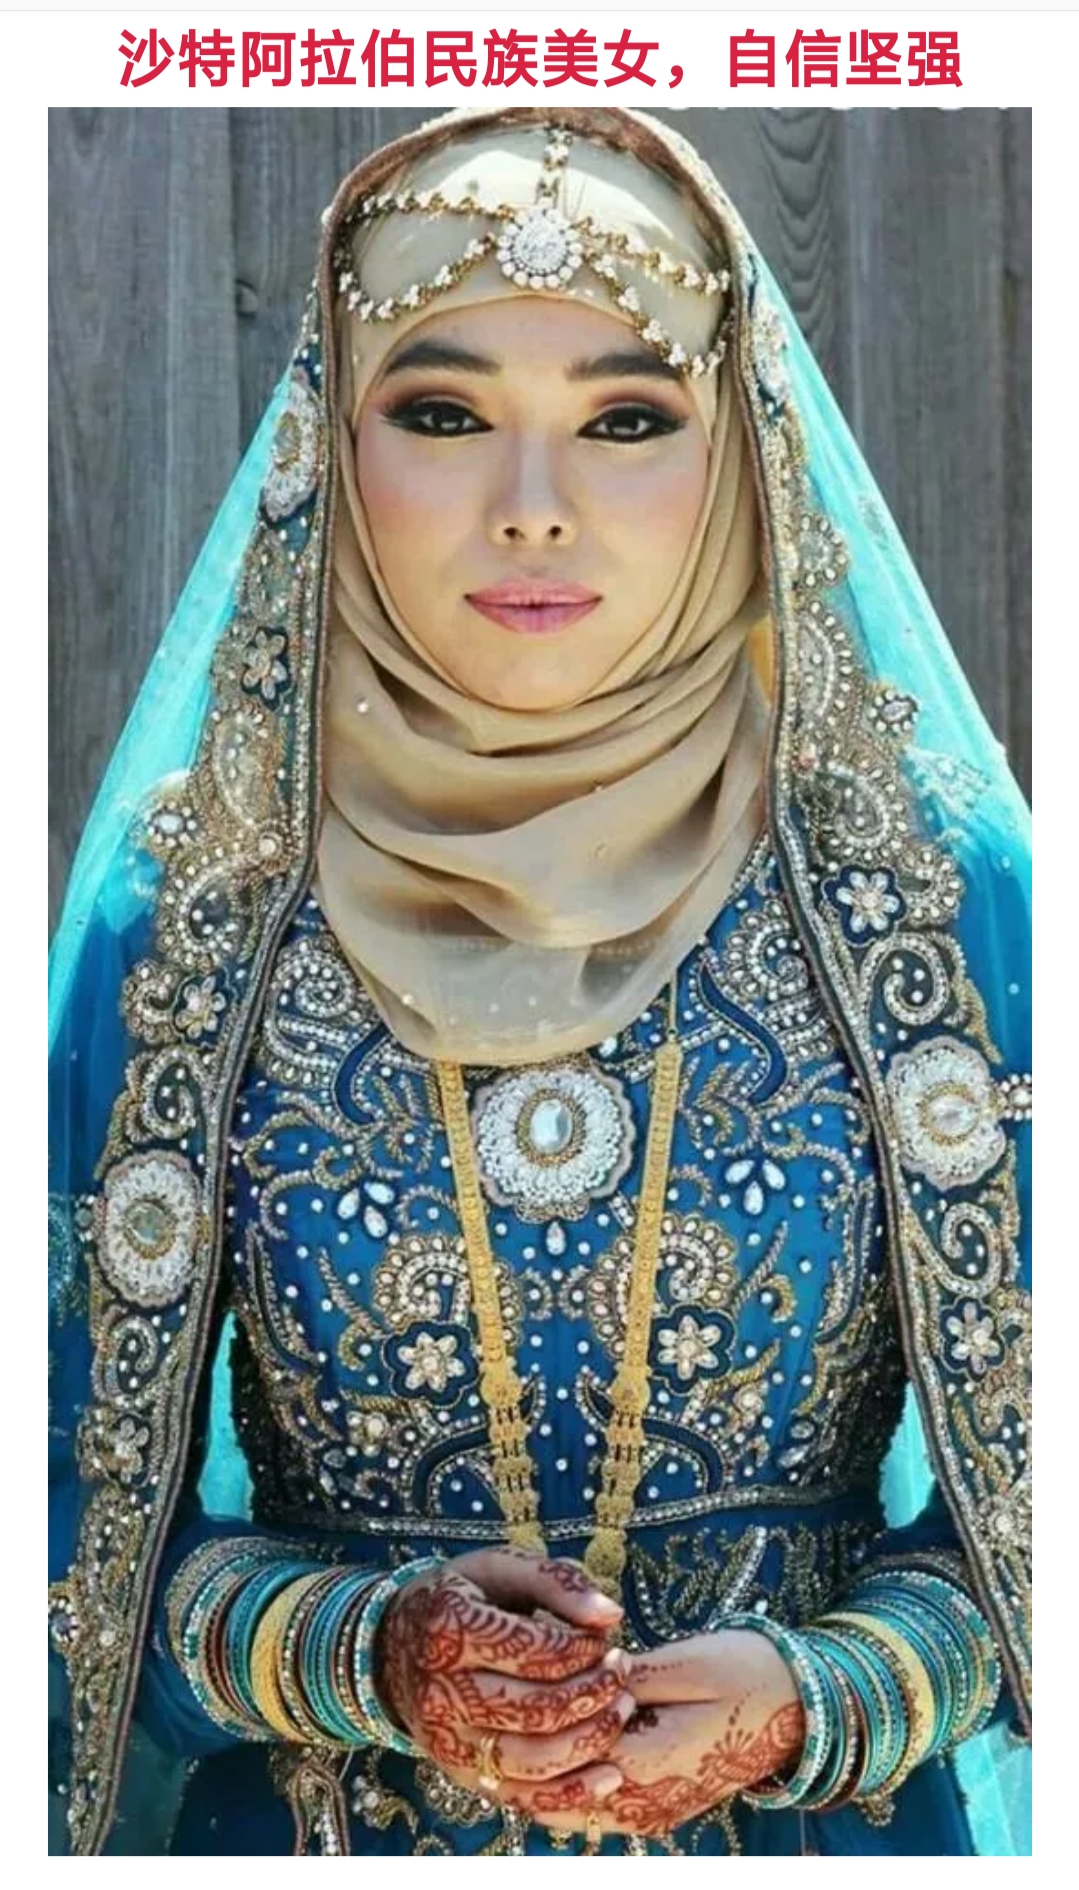 世界各国特色民族女人的服饰,容貌和特质!